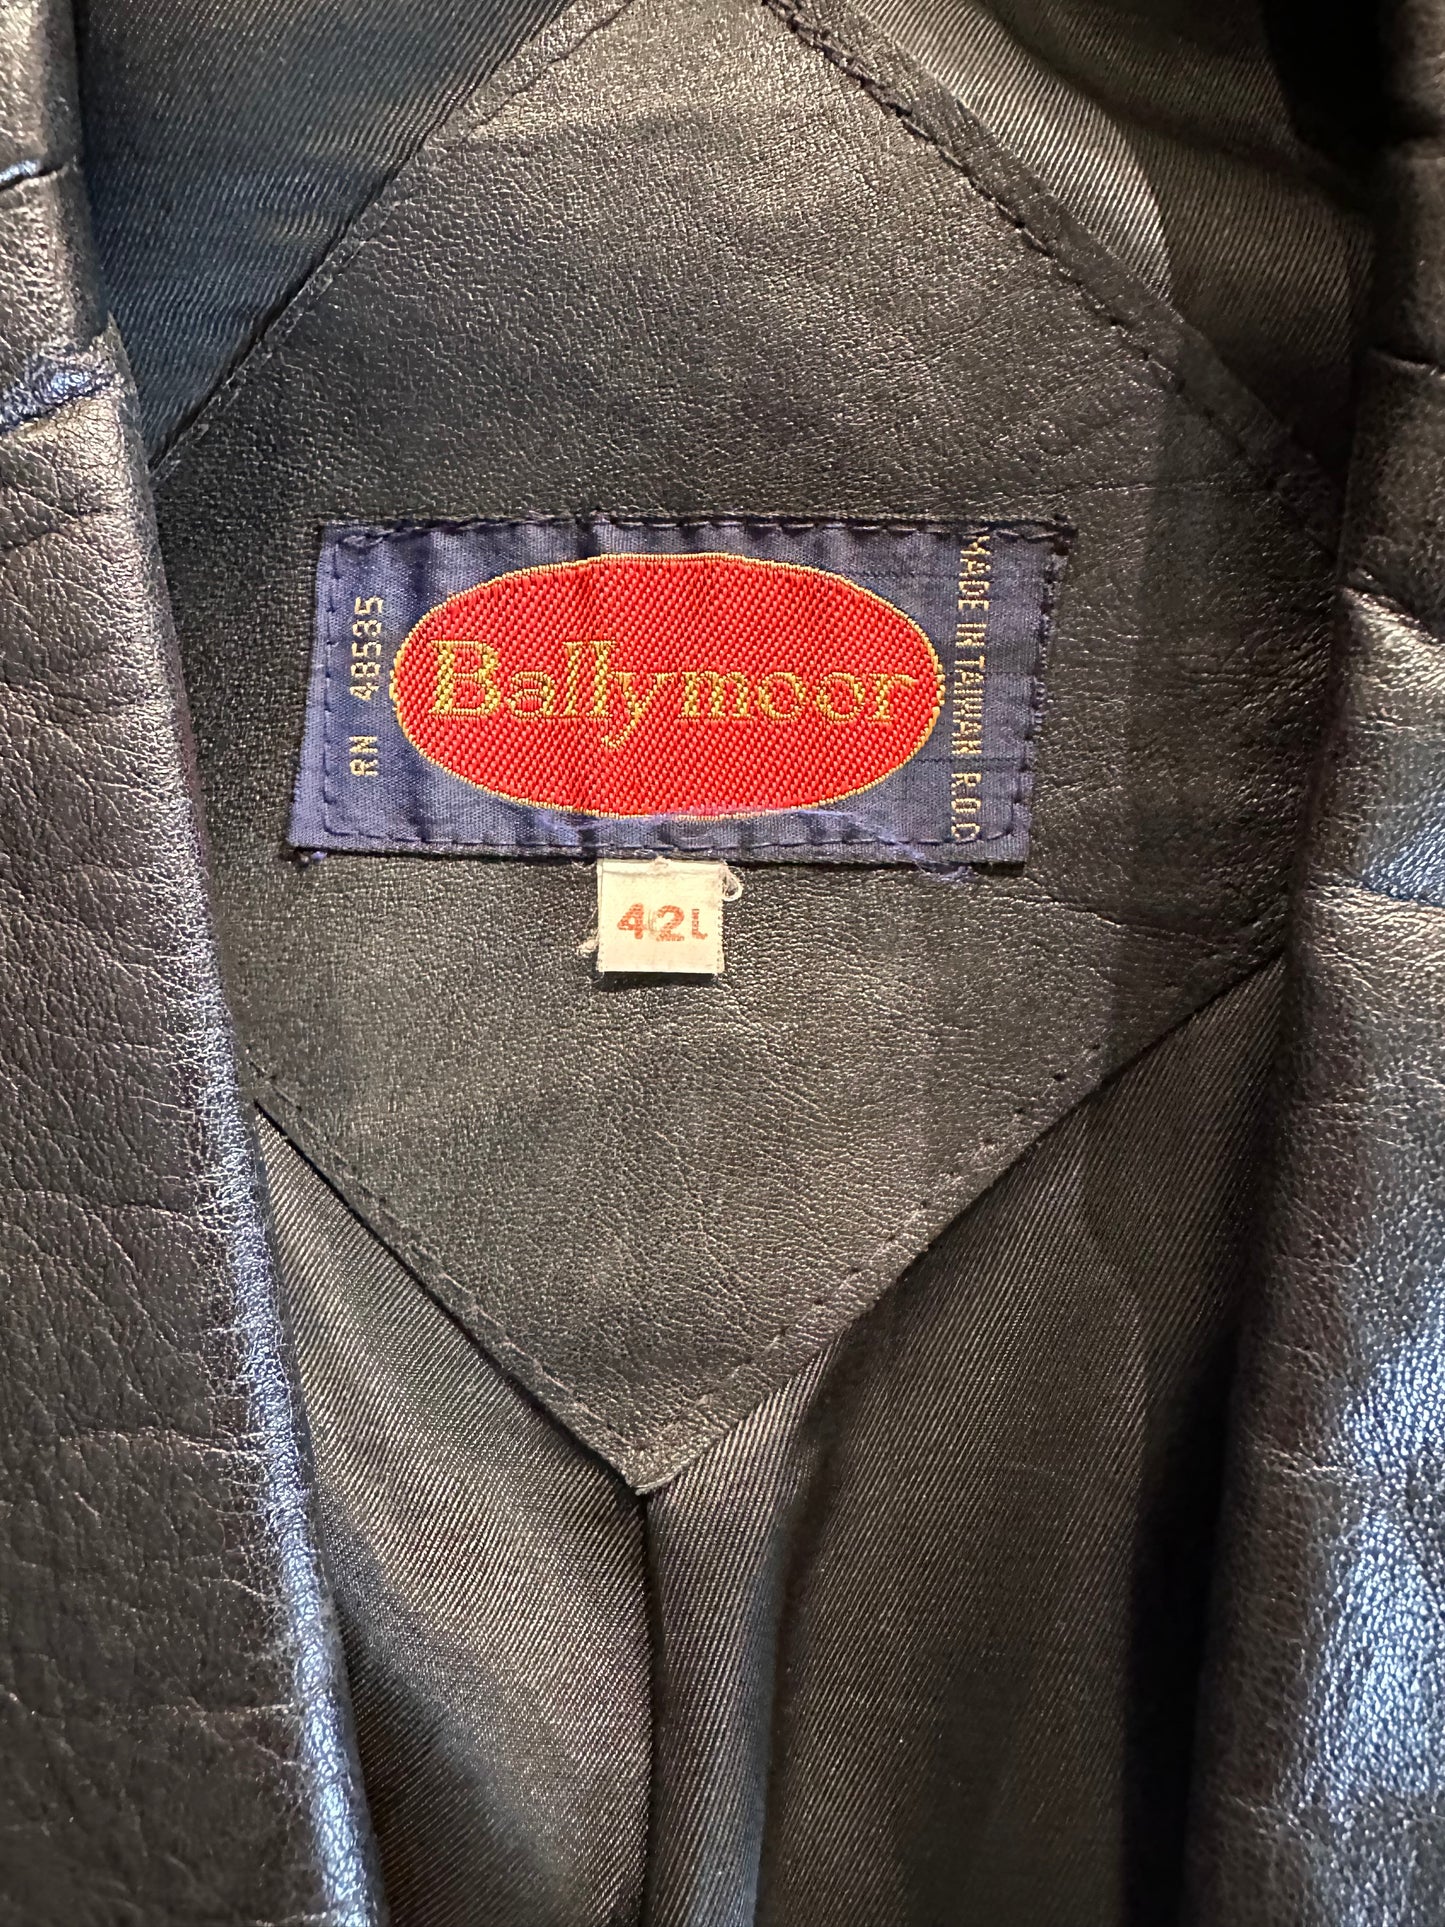 90s 'Ballymoor' Black Leather Blazer Jacket / Large